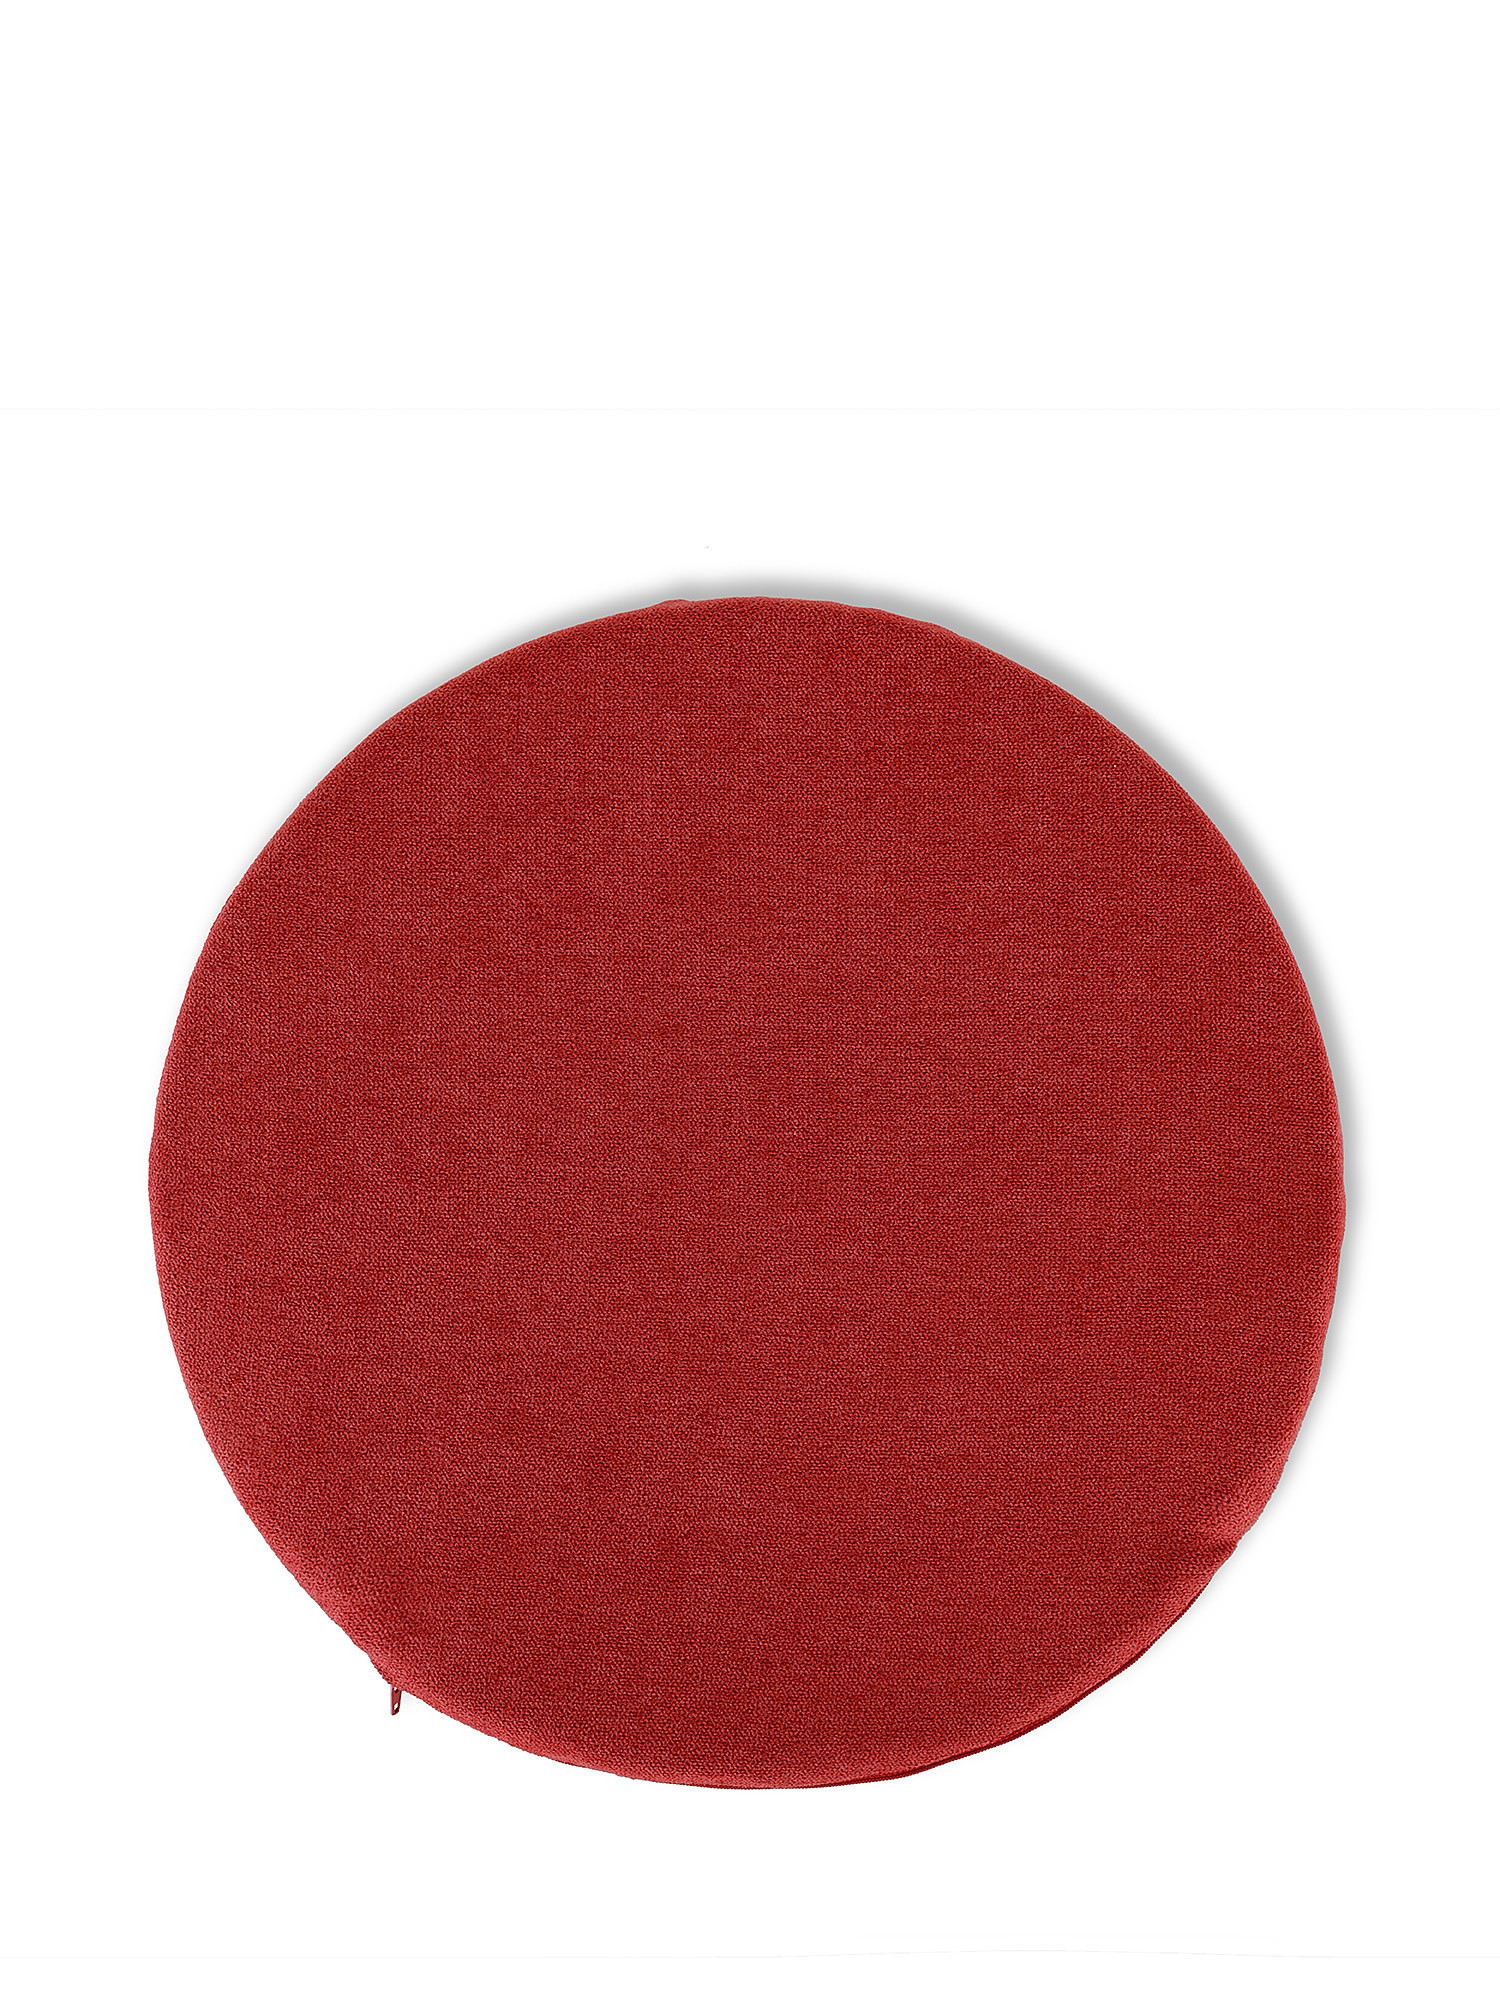 Cuscino da sedia in cotone tinta unita, Rosso, large image number 0